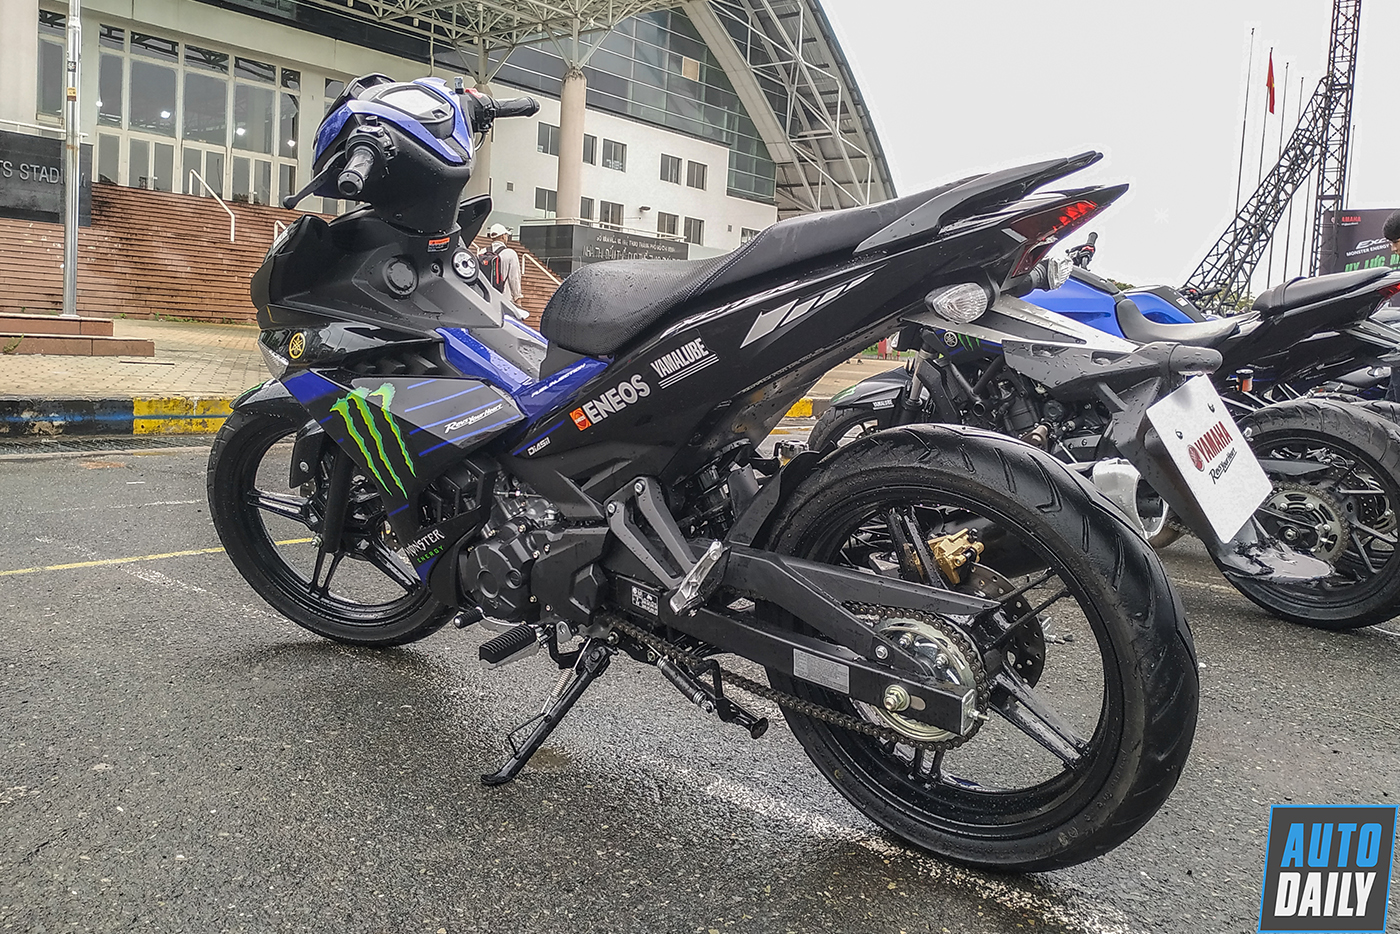 Yamaha Exciter 150 Monster Energy là một chiếc xe mô tô đầy quyến rũ và đáng kinh ngạc. Với lối thiết kế đơn giản nhưng ấn tượng, chiếc xe này mang đến một sự mạnh mẽ và khác biệt hoàn toàn so với những chiếc xe khác trong phân khúc của nó. Hãy đến và khám phá những chức năng vượt trội của chiếc xe này.